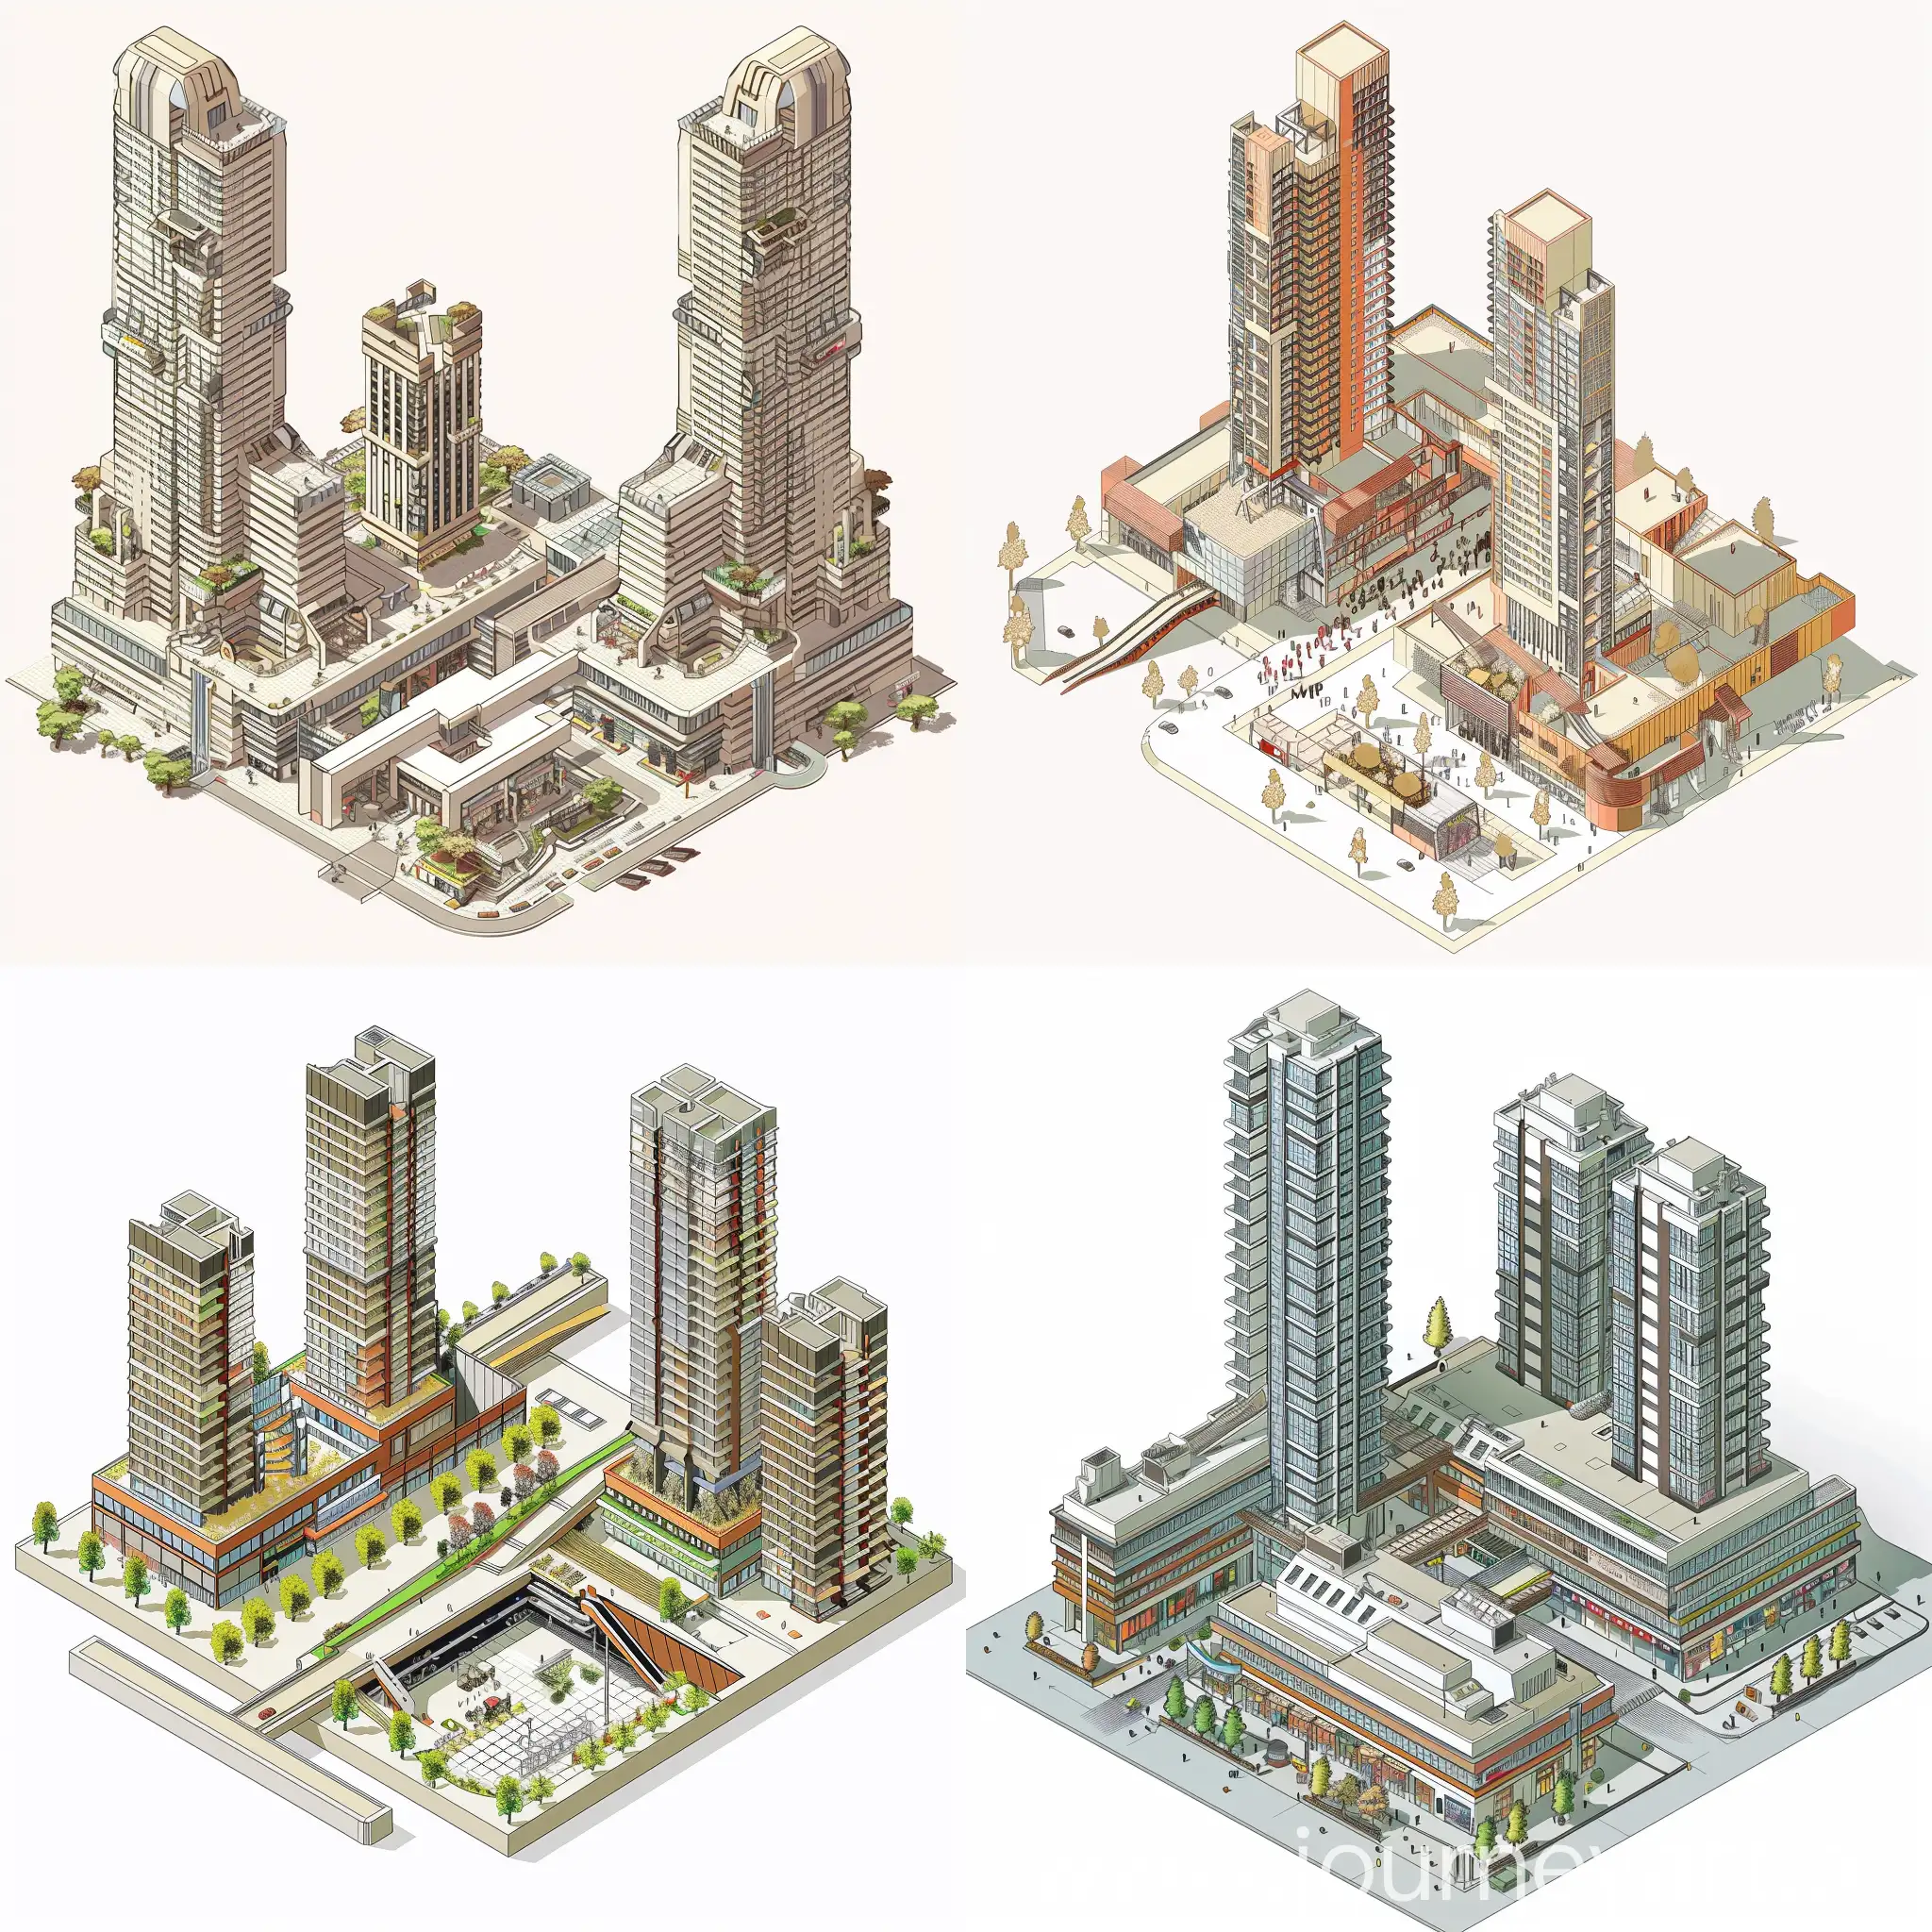 Una imagen en isométrico del diseño de  un edificio híbrido, que los dos primeros niveles sean un centro comercial , y 2 edificios altos, al estilo moderno que una los edificios con puentes, con un estilo de deconstructivismo